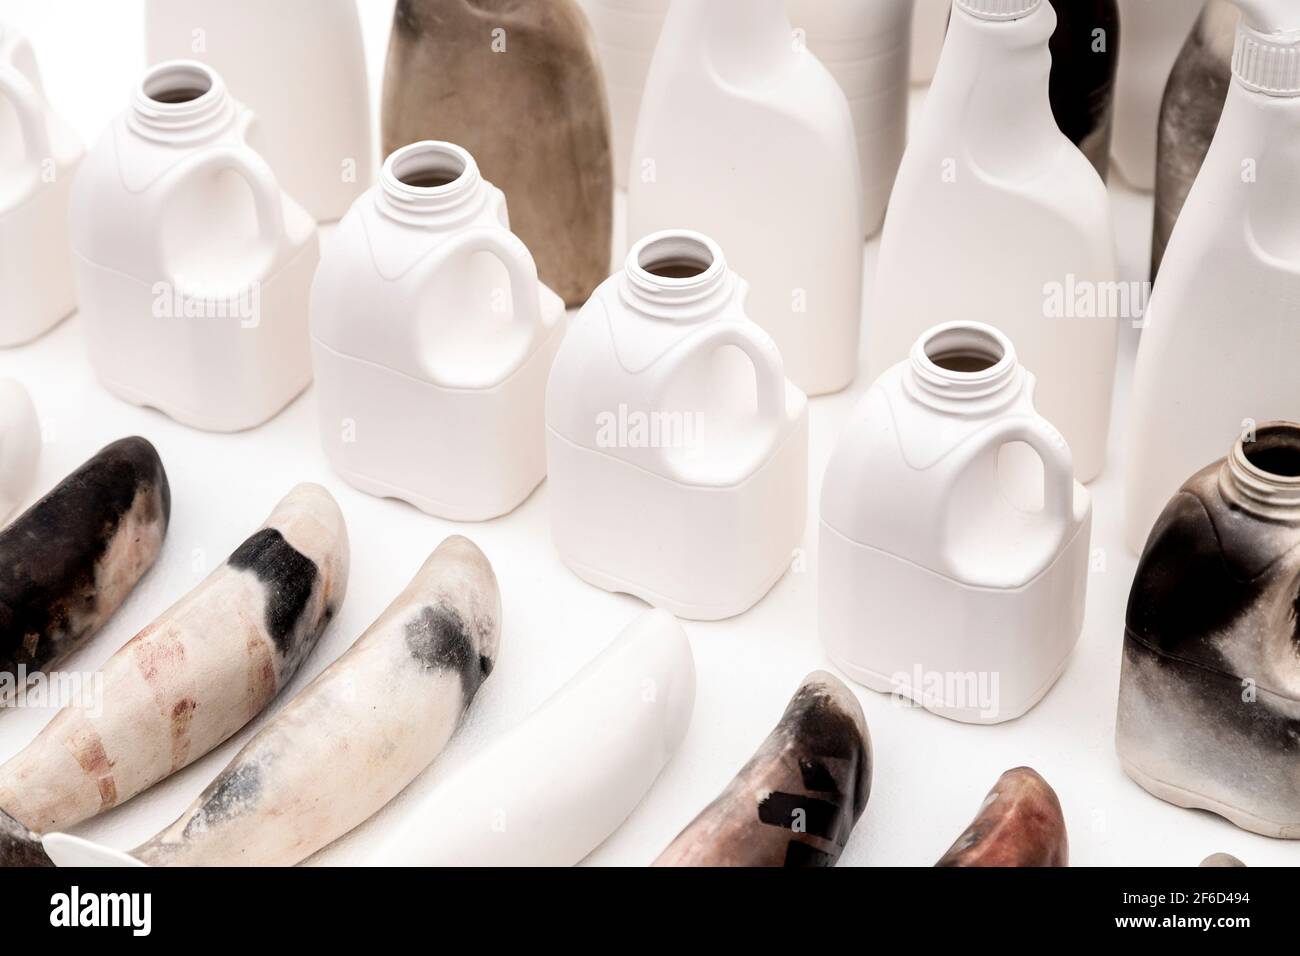 'Harvest' Kunstwerk zur Hervorhebung der Plastikverschmutzung in Ozeanen von der Künstlerin Mella Shaw auf der Other Art Fair 2018, London, Großbritannien Stockfoto